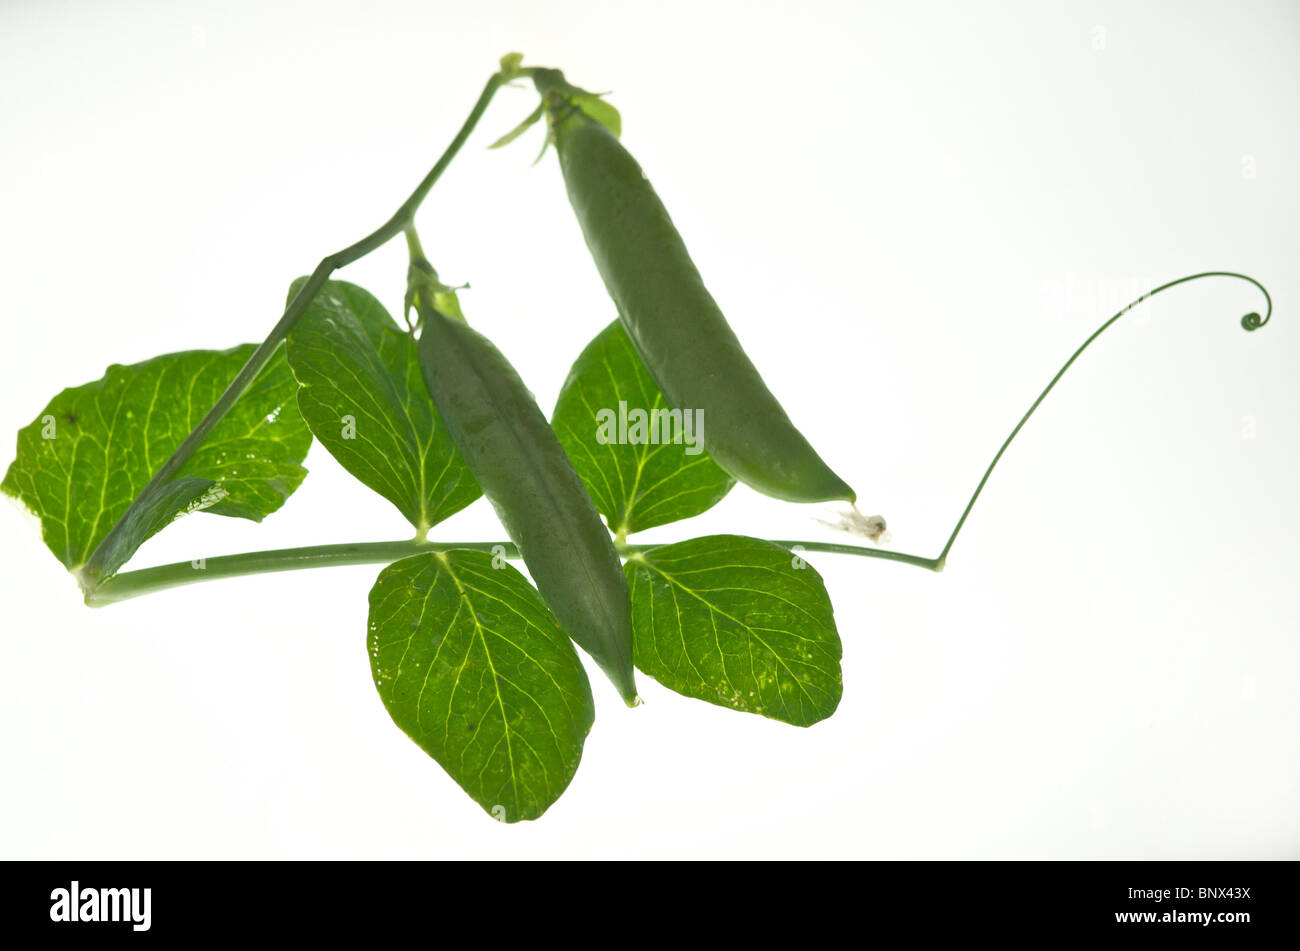 Piselli Piselli Giardino visualizzato organico come un immagine ritagliata di questo preferito vegetali da giardino Foto Stock